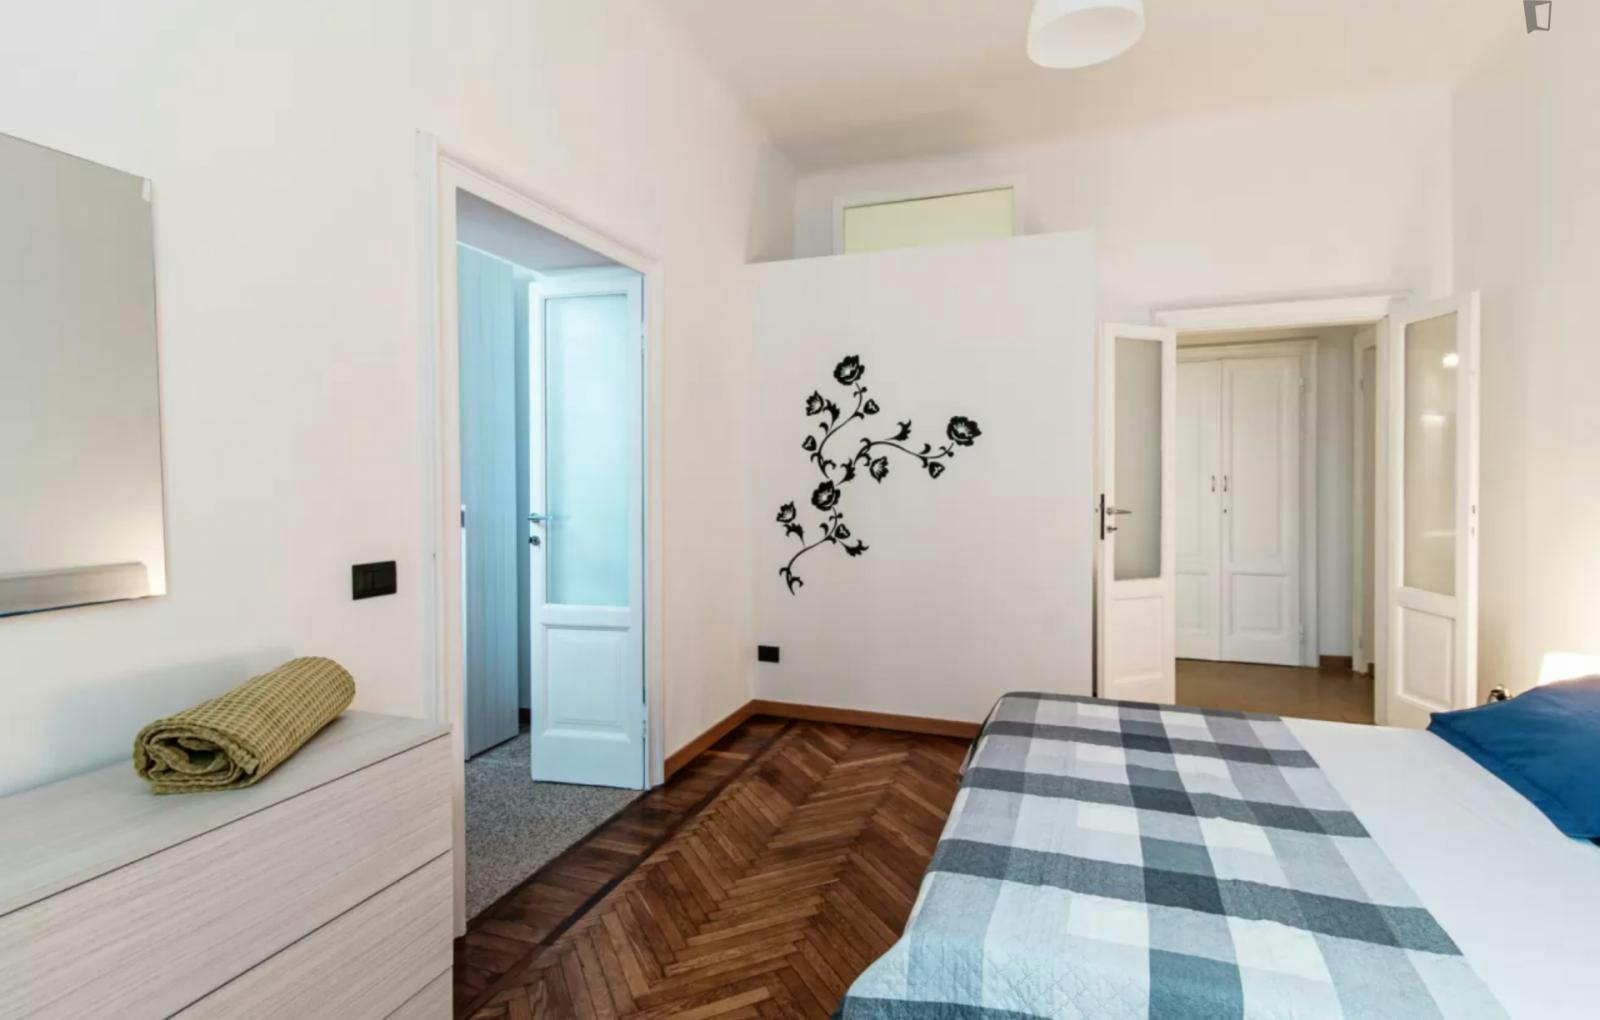 Spacious 2-bedroom flat near Università dell'Insubria